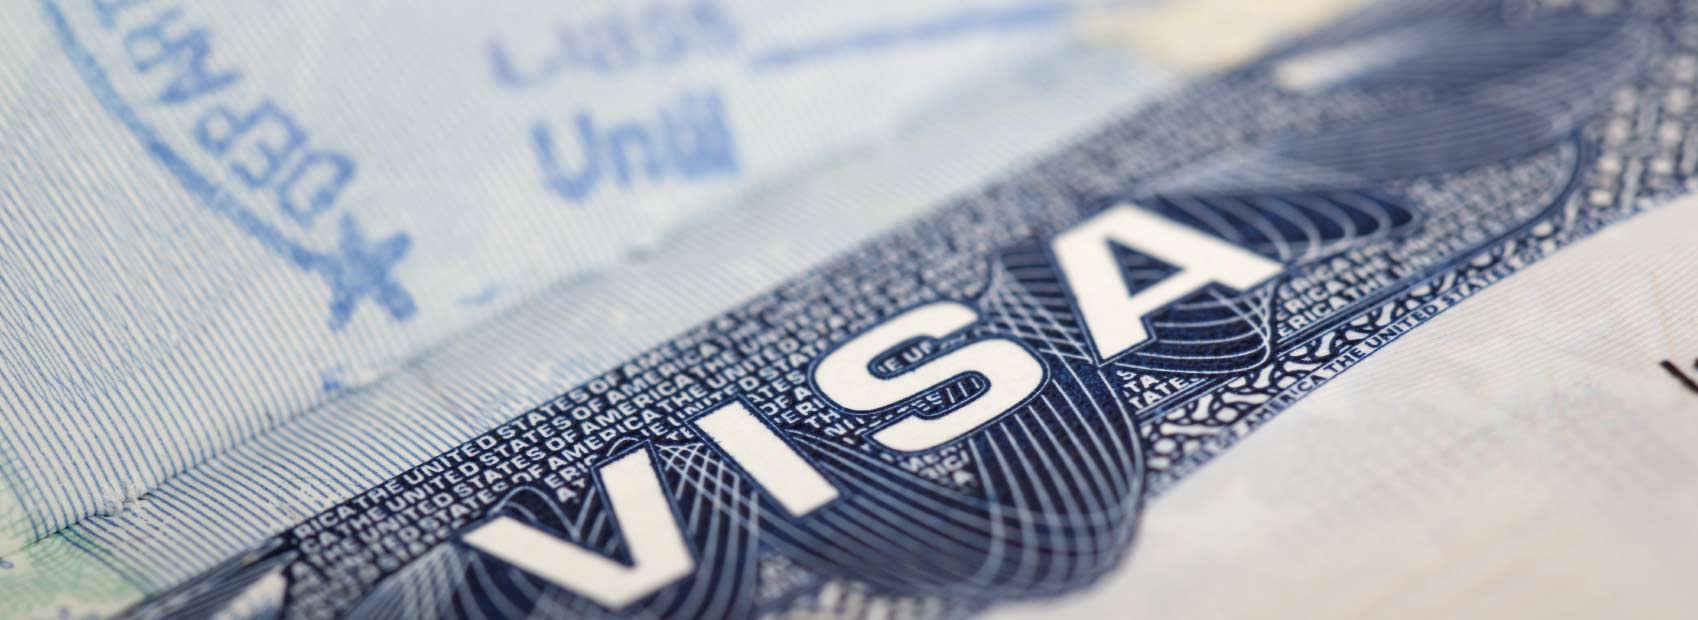 How to Apply for a 14 Days Dubai Visa Easily?